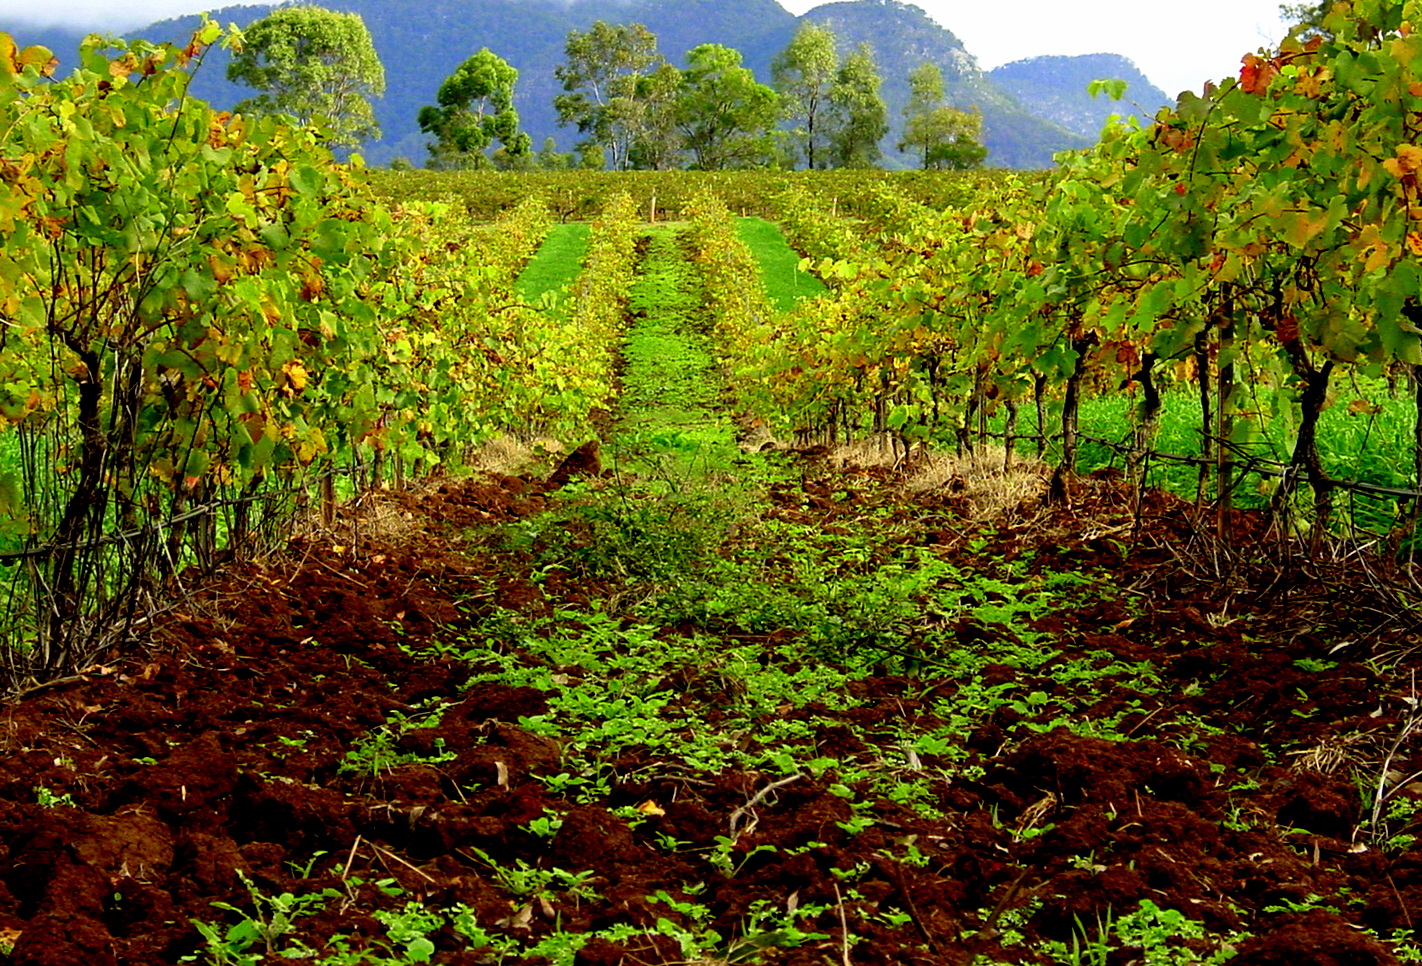 Austràlia té un problema molt greu de sobreproducció de raïm i vi a causa de l'embarg comercial de la Xina | Wikimedia Commons